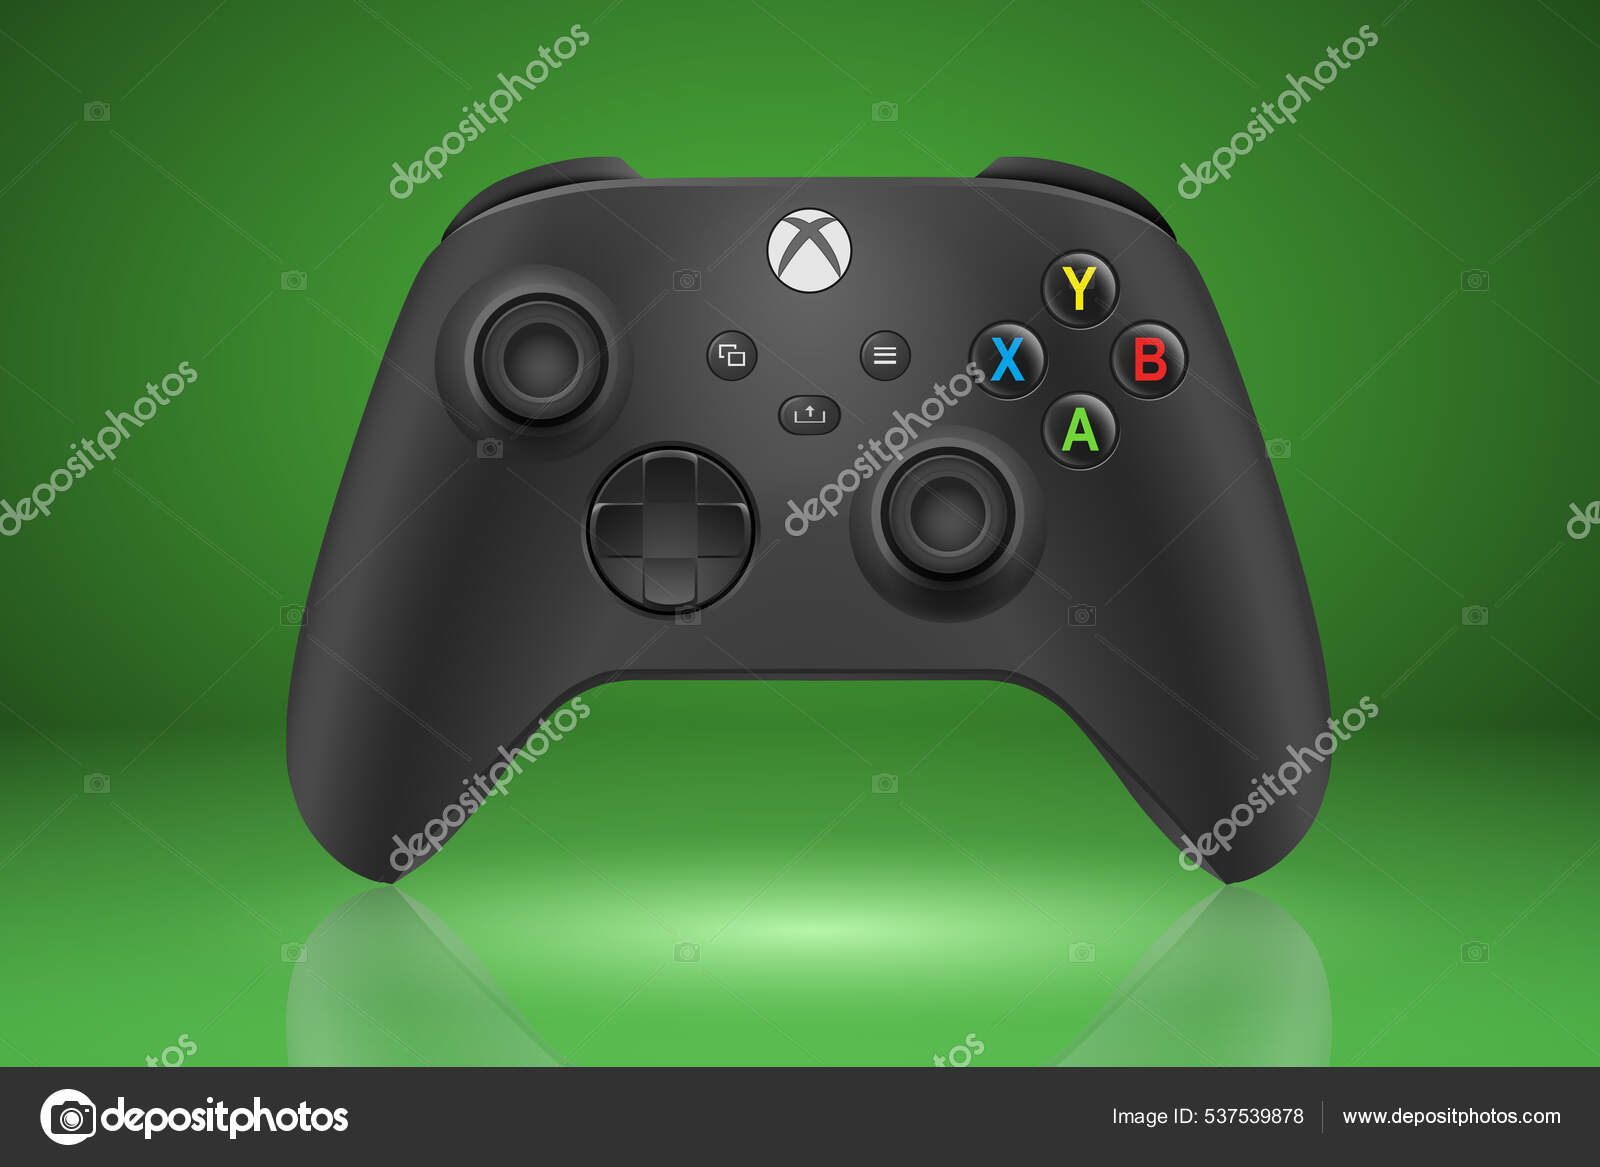 Xbox Series X Gamepad Green Moscow với thiết kế đẹp mắt, phù hợp với vị trí cầm nắm tuyệt vời và chính xác, cho phép bạn thực sự kiểm soát trò chơi của mình như mong muốn. Hãy xem qua hình ảnh để có thể tận hưởng cái nhìn chân thực, chi tiết về thiết kế tuyệt vời này.